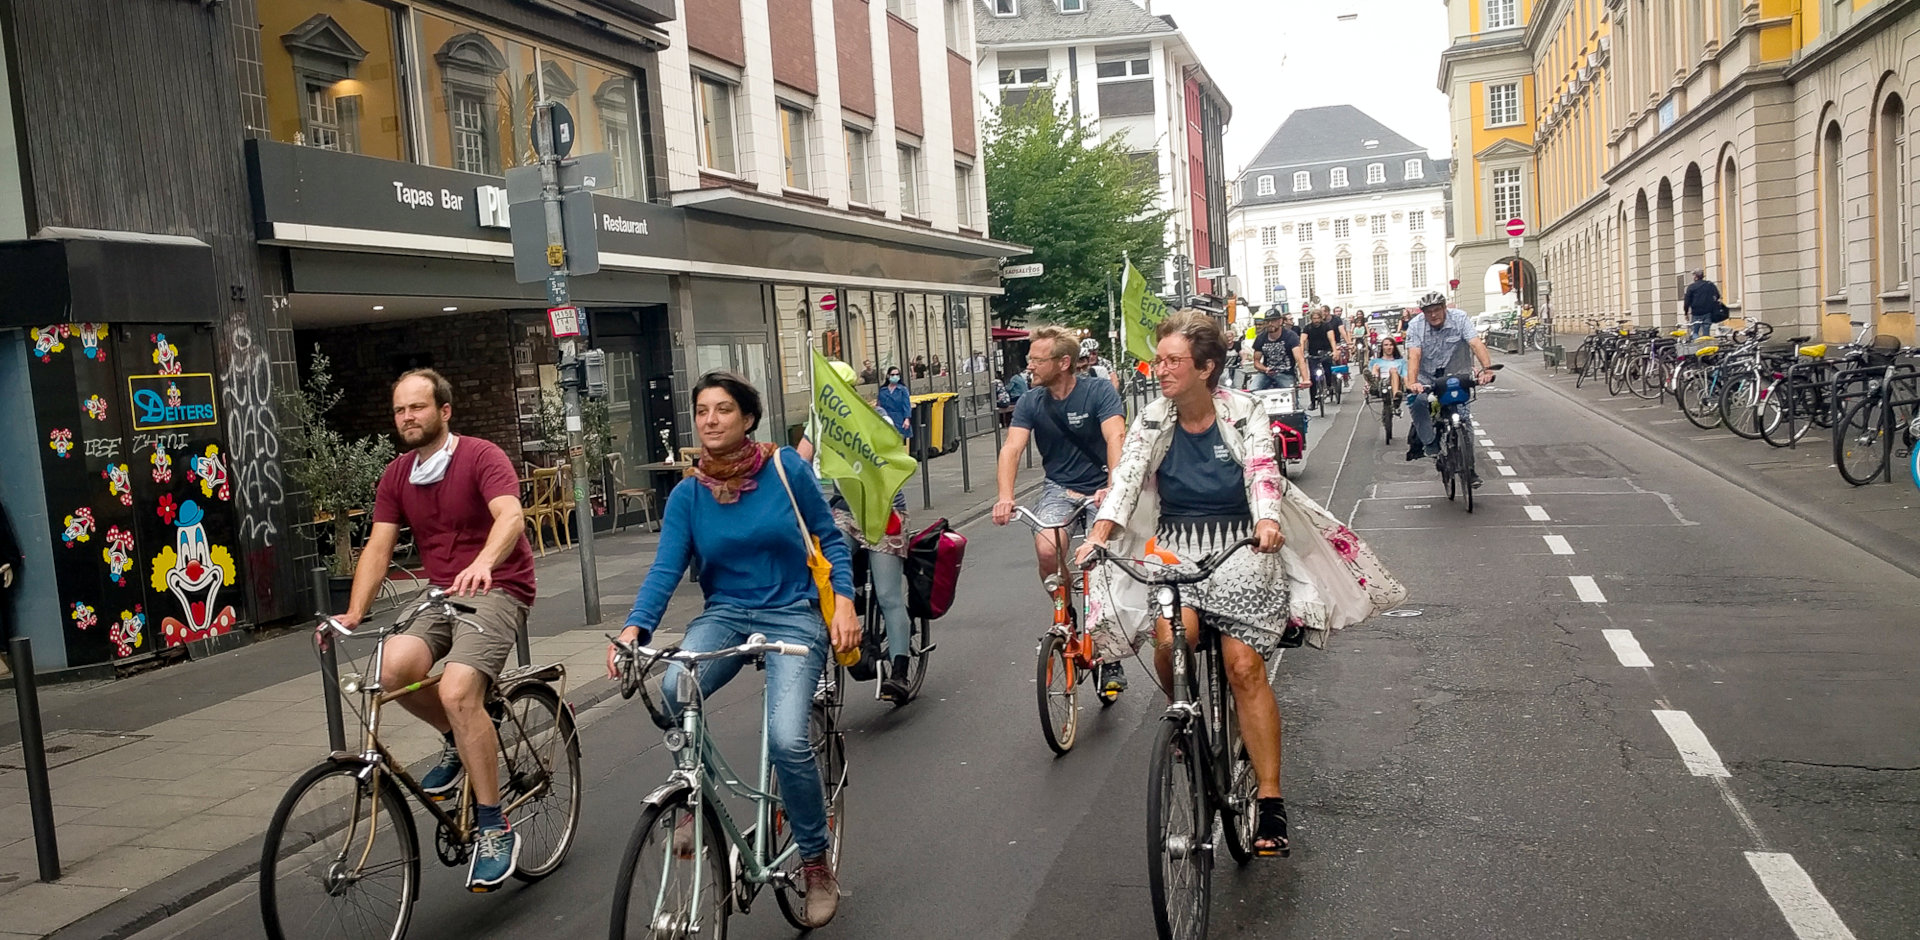 Ein Verband von Radfahrendnen fährt am Uni-Hauptgebäude vorbei. Manche haben Fahnen vom Radentscheid Bonn an ihren Fahrrädern.